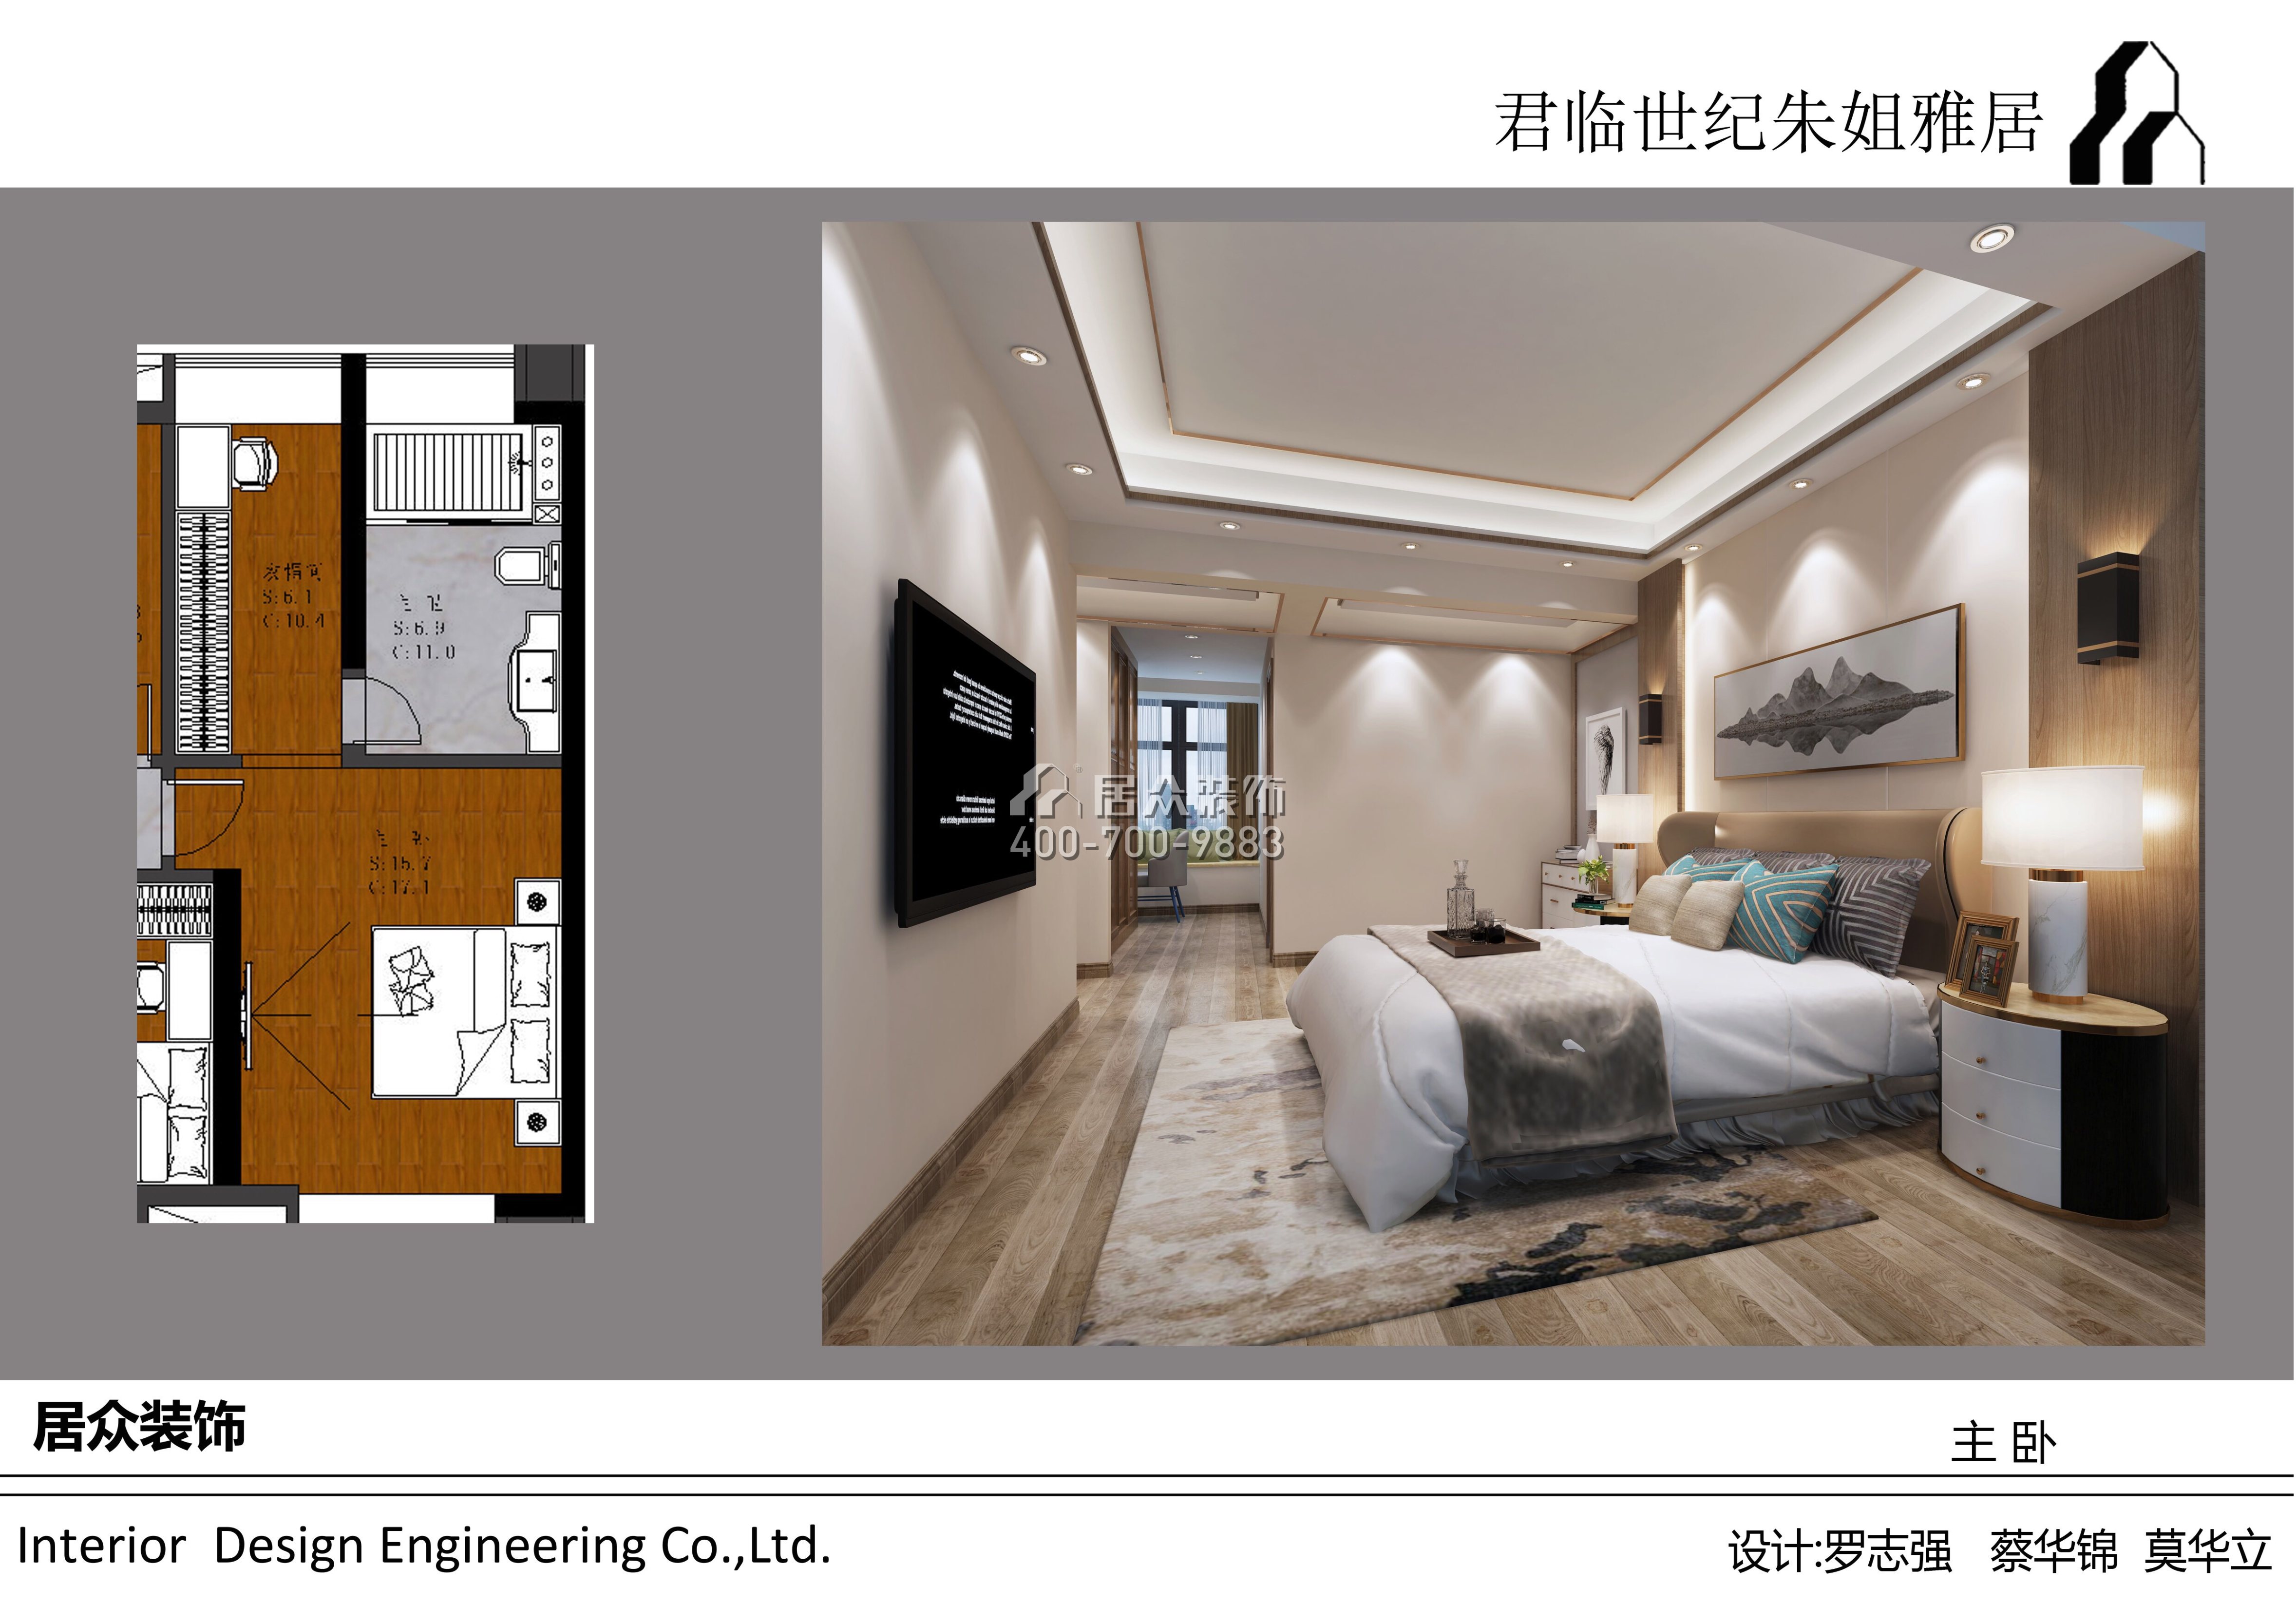 君臨世紀150平方米現代簡約風格平層戶型臥室裝修效果圖